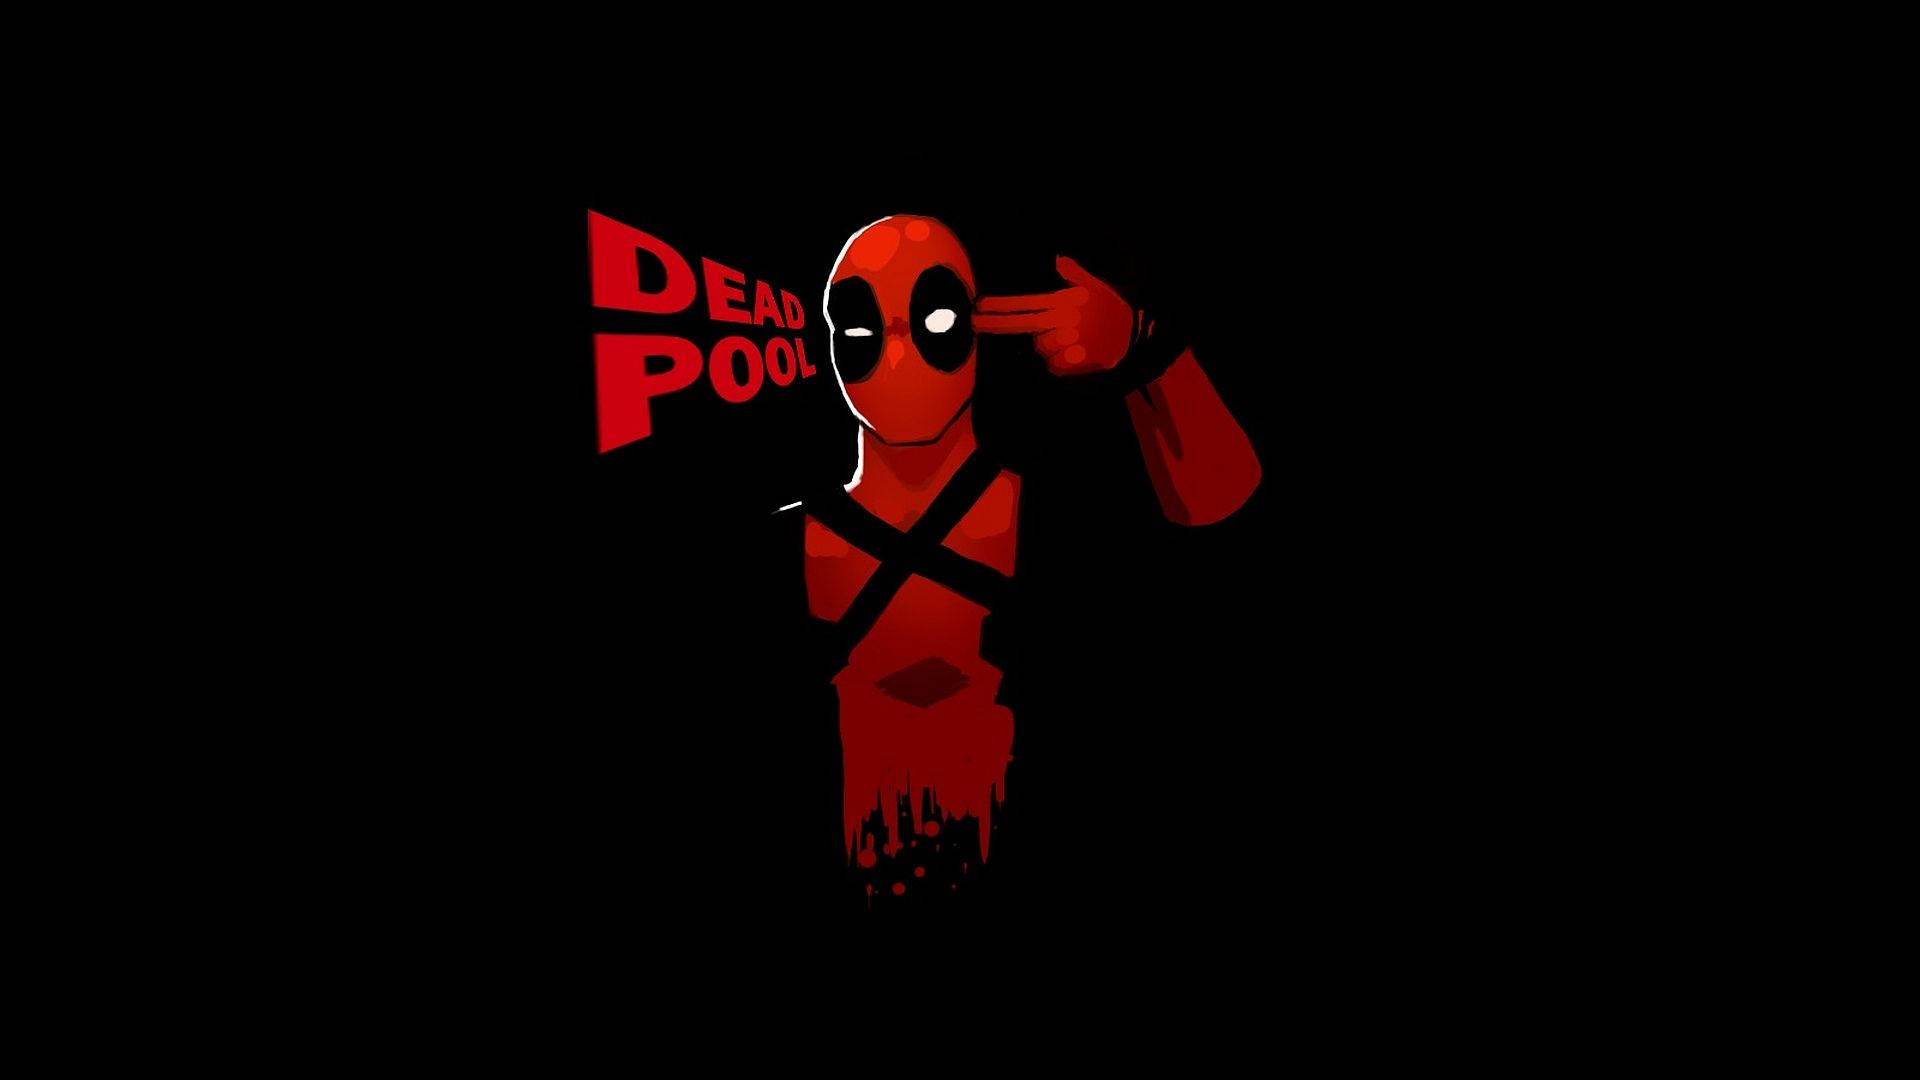 Free Deadpool Wallpapers HD - PixelsTalk.Net